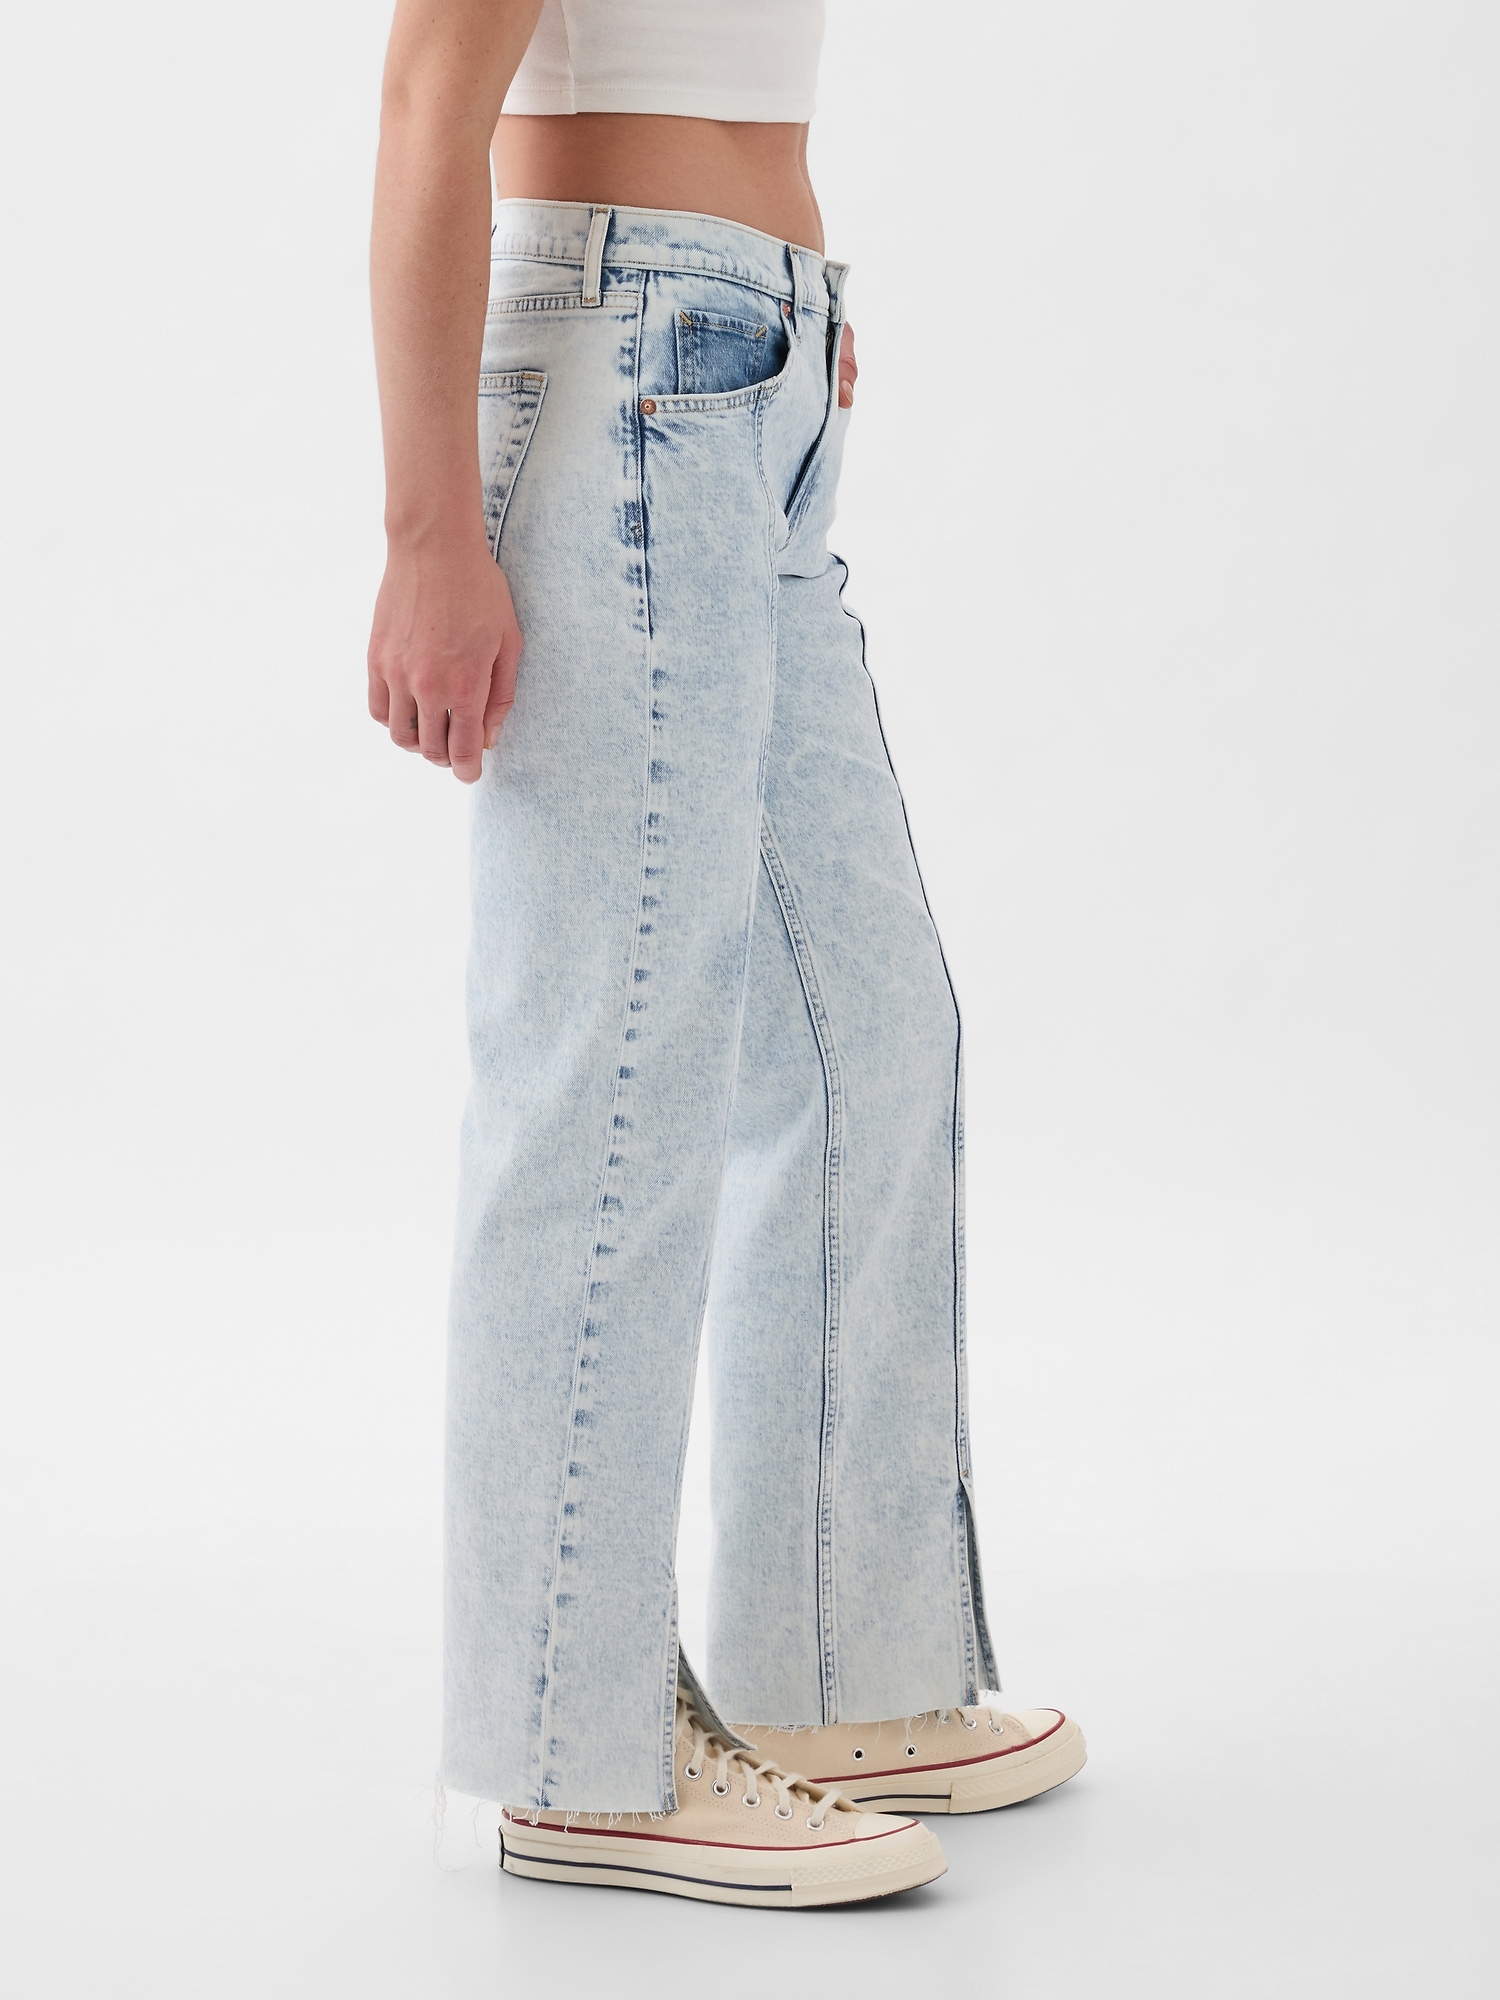 갭 Mid Rise 90s Loose Jeans